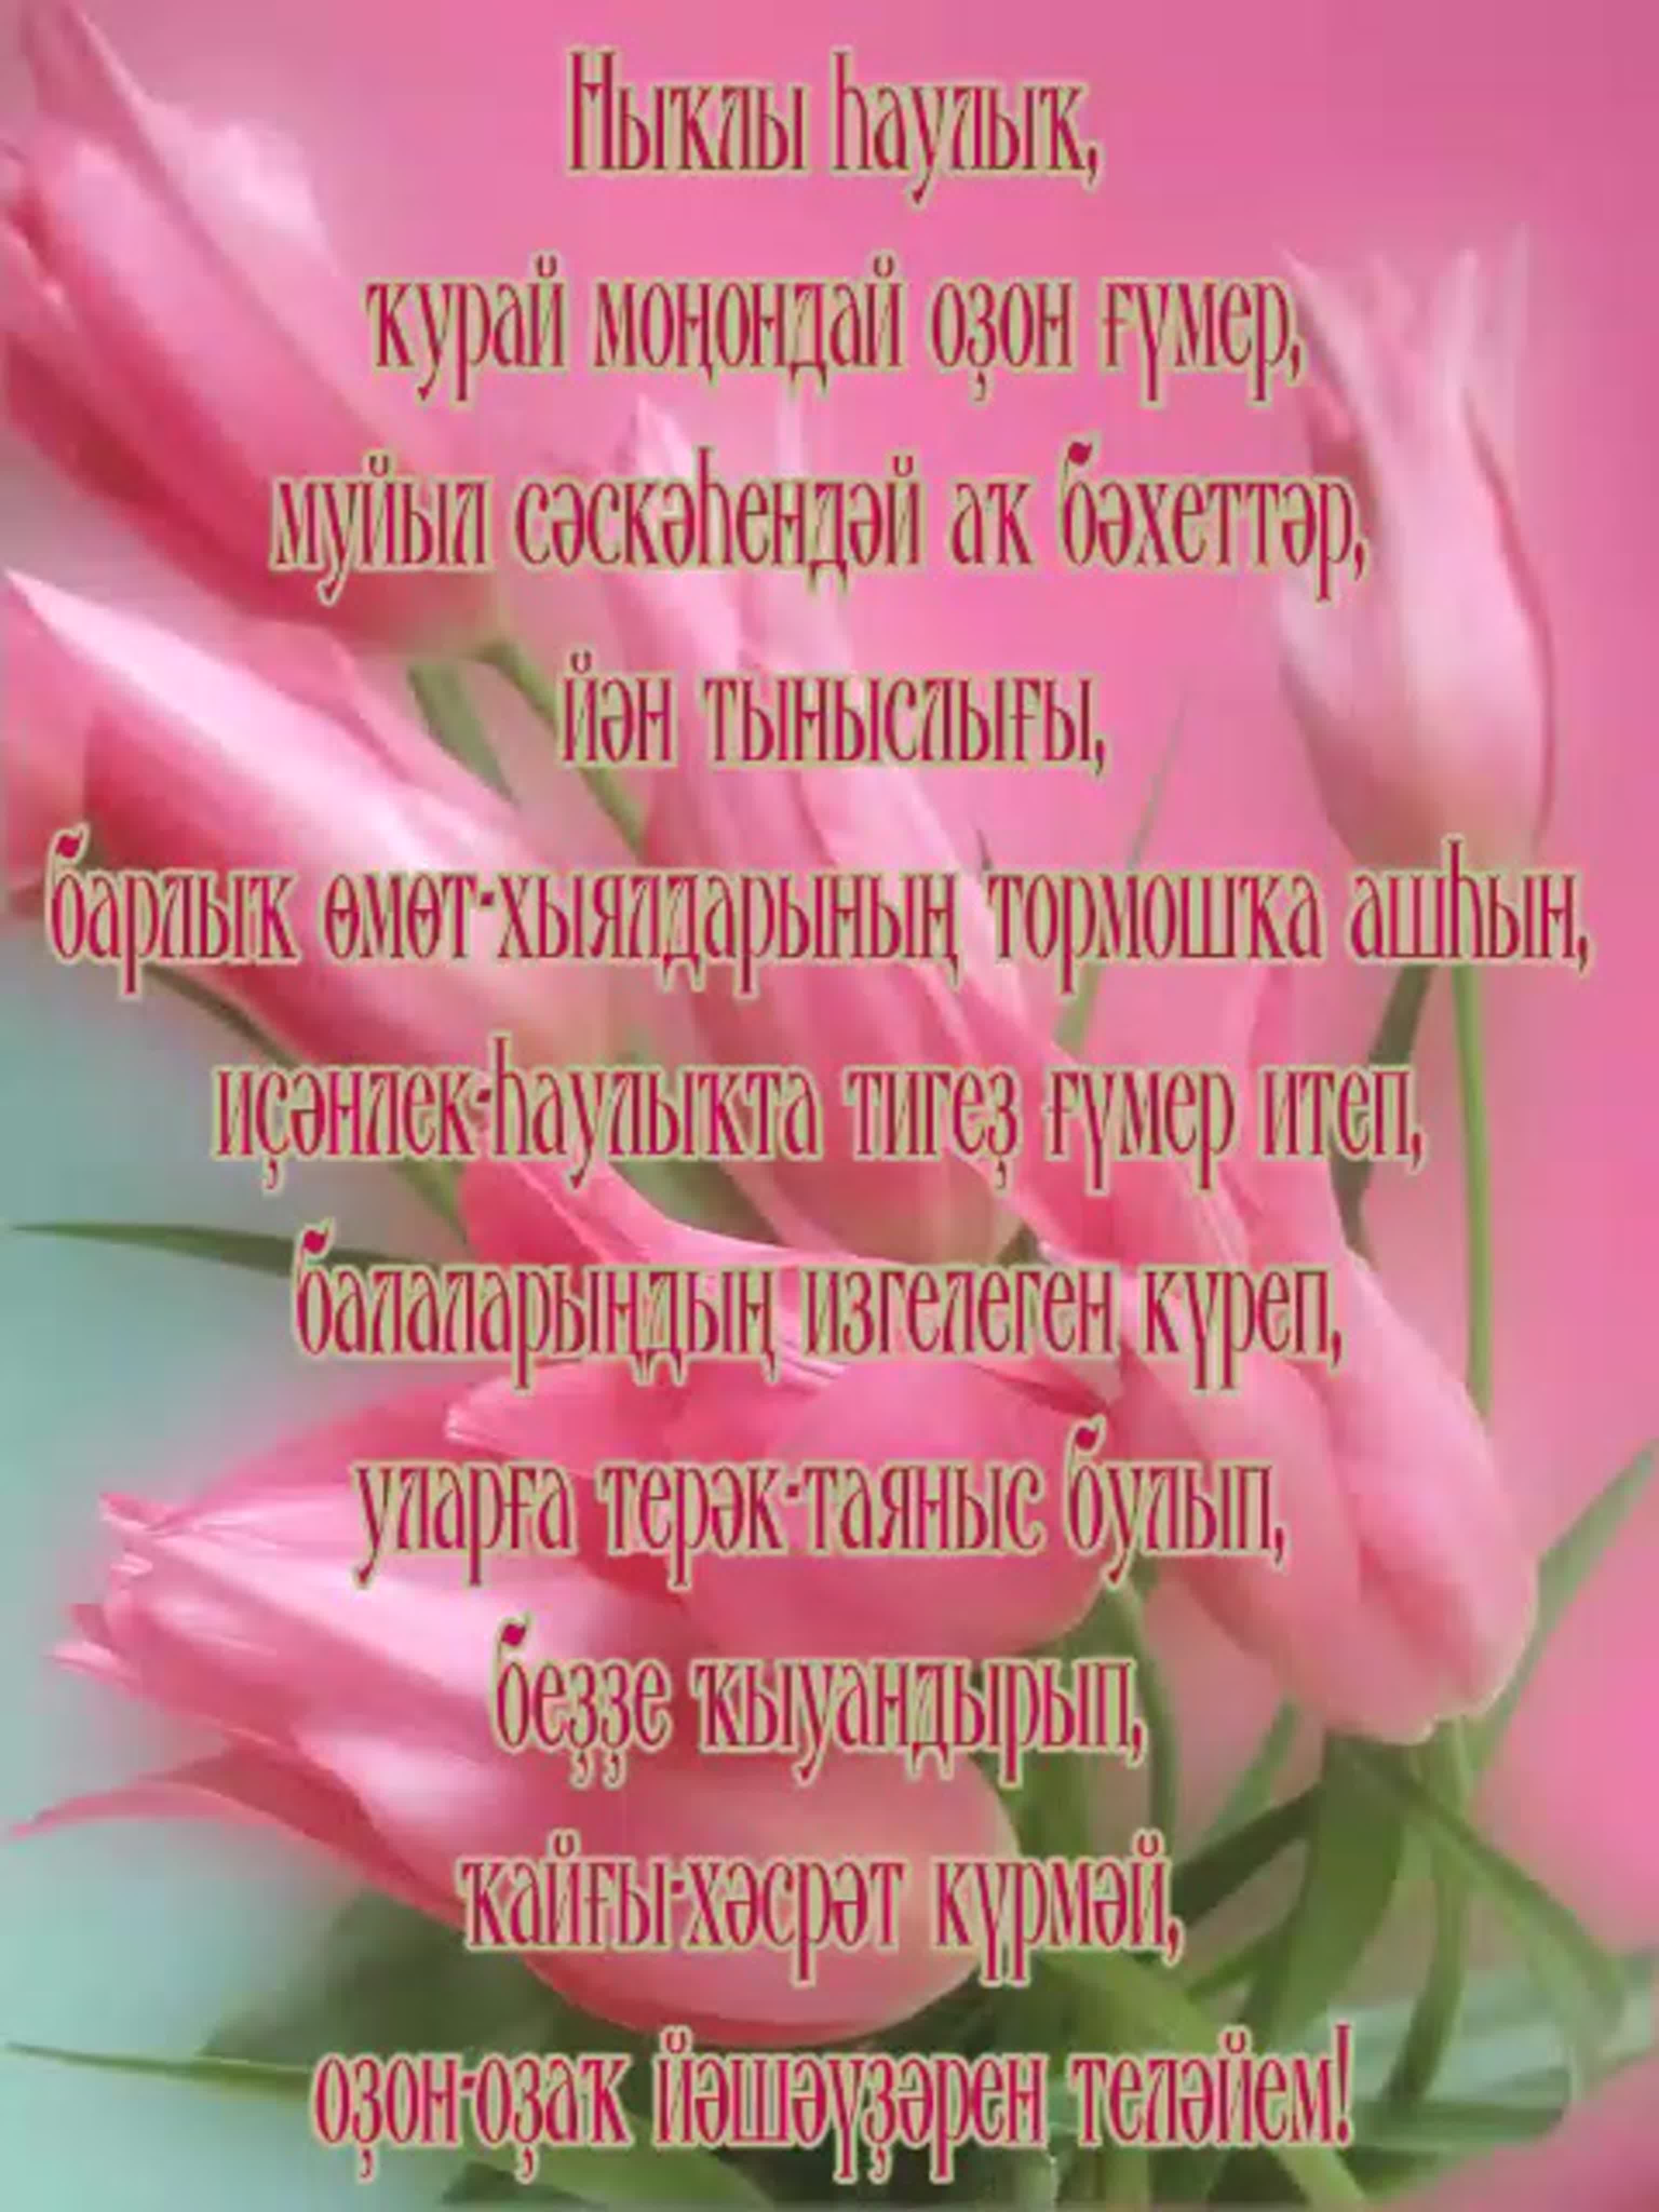 Поздравление на башкирском языке маме